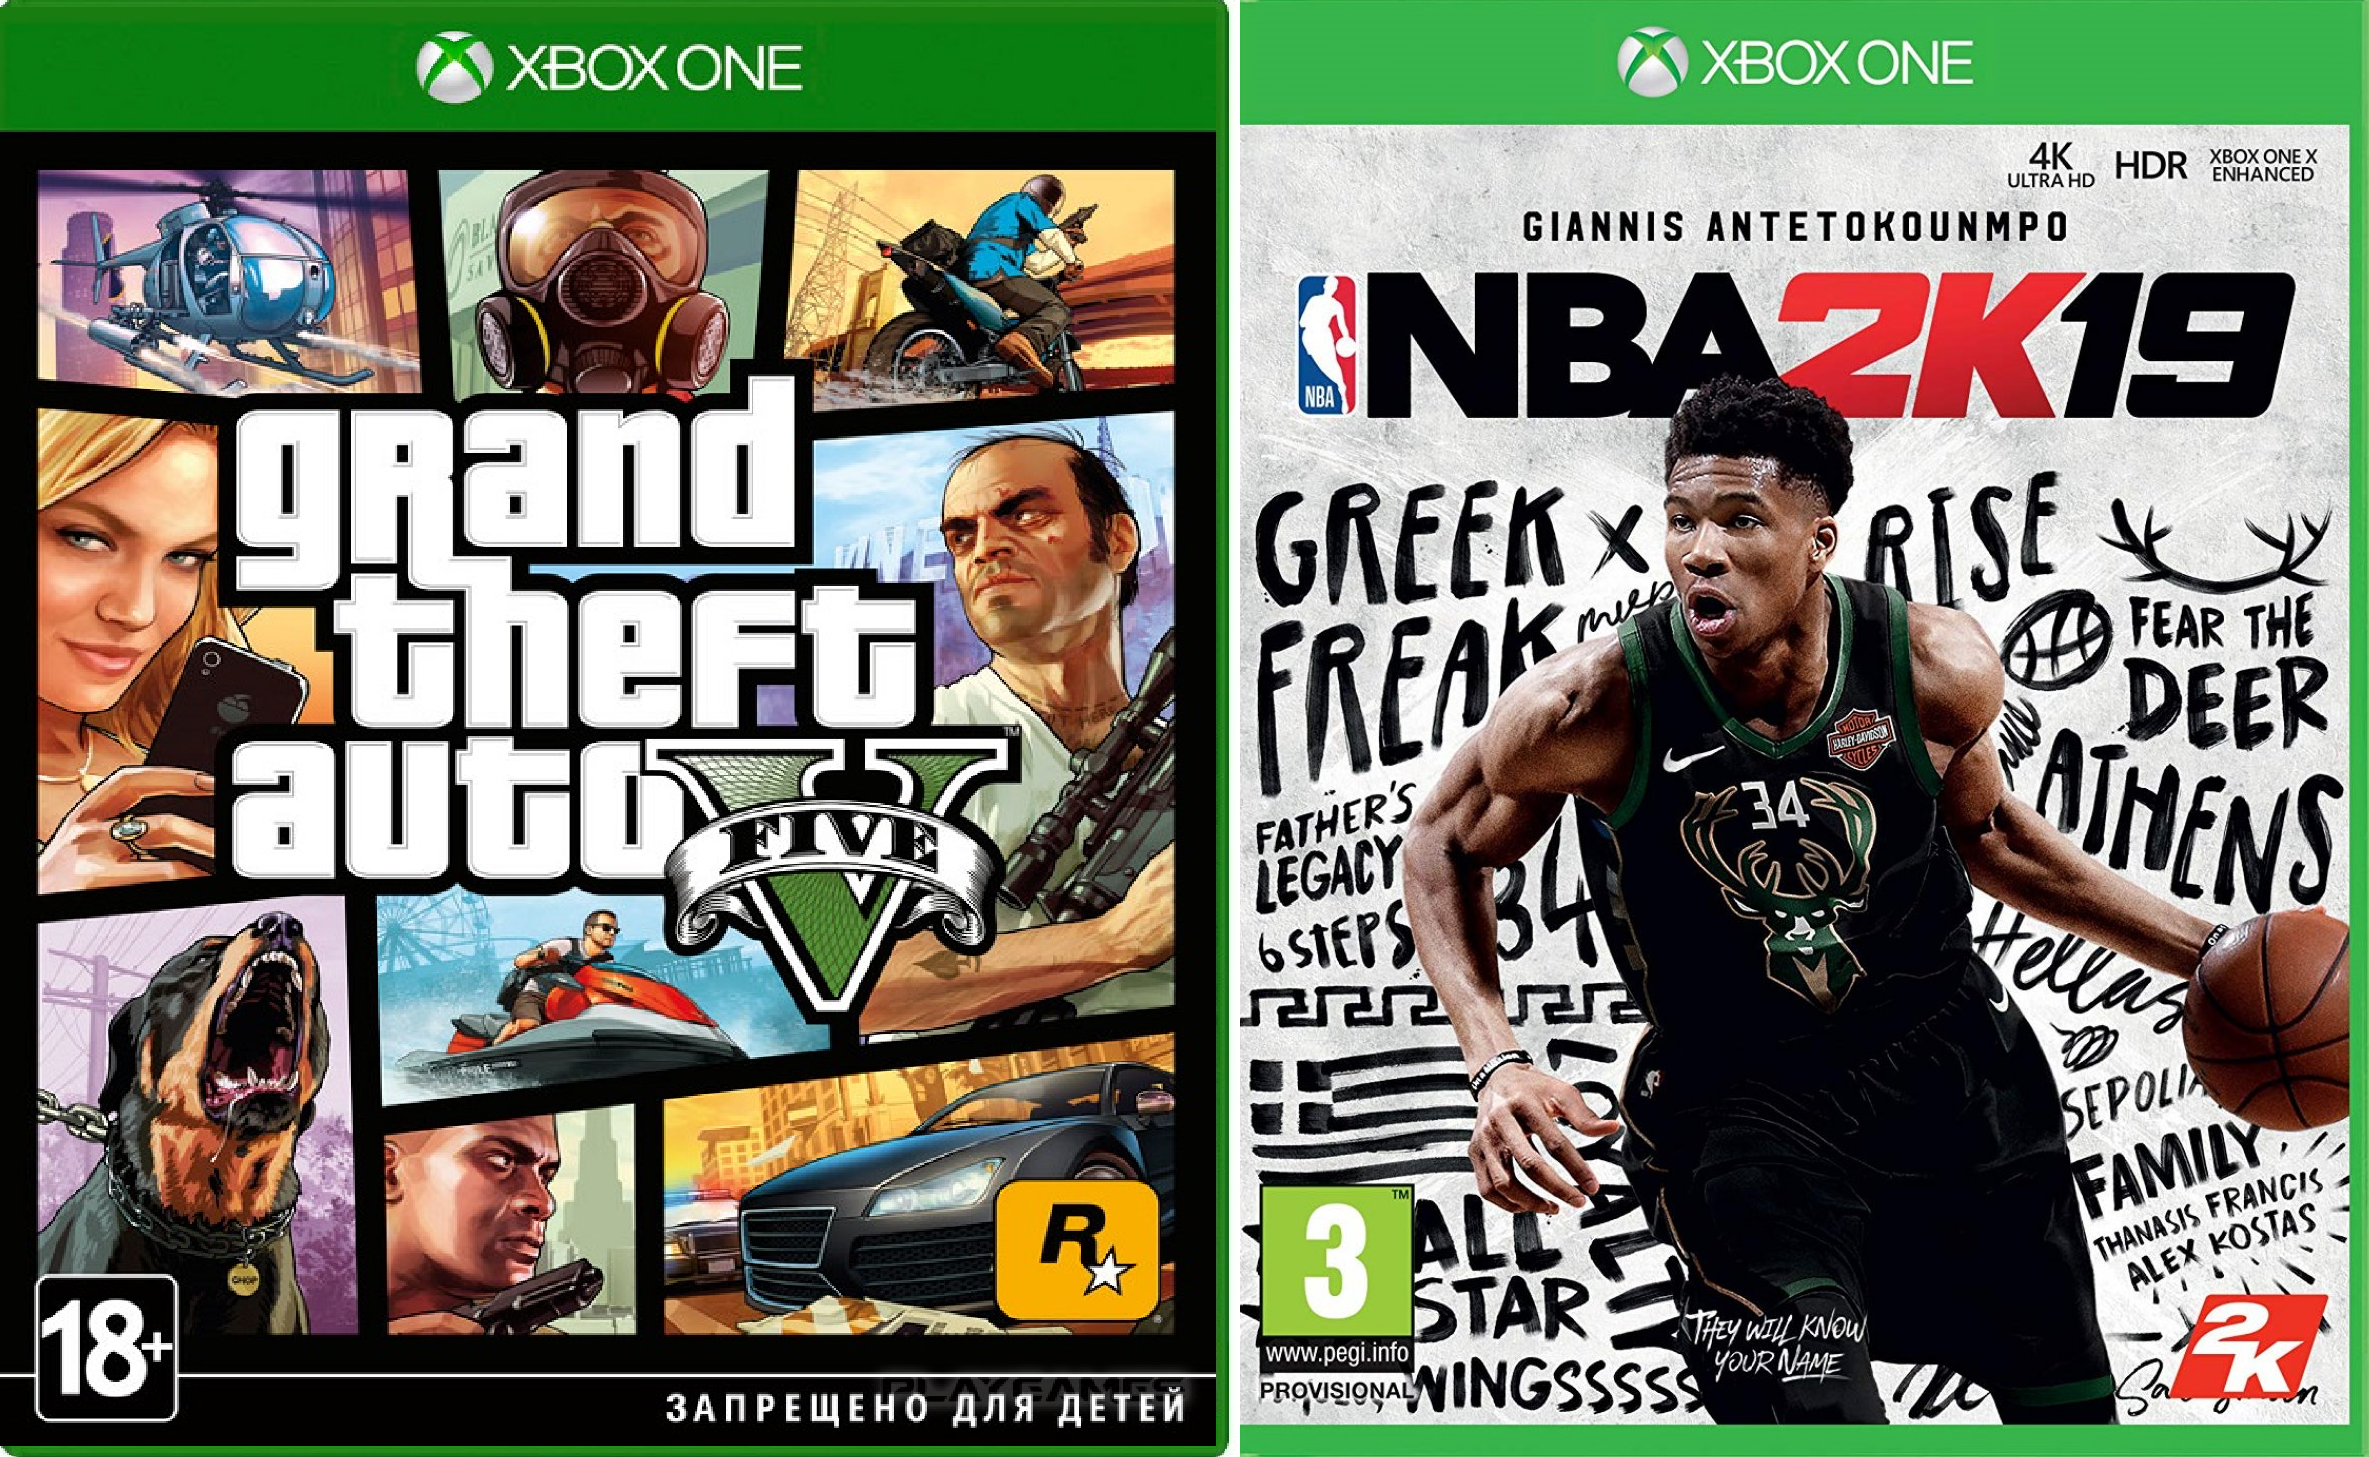 Общие аккаунты с играми xbox. GTA 5 Xbox 360 обложка. Xbox Series x игры. Аккаунт Xbox с играми. Xbox one s игры аккаунт.